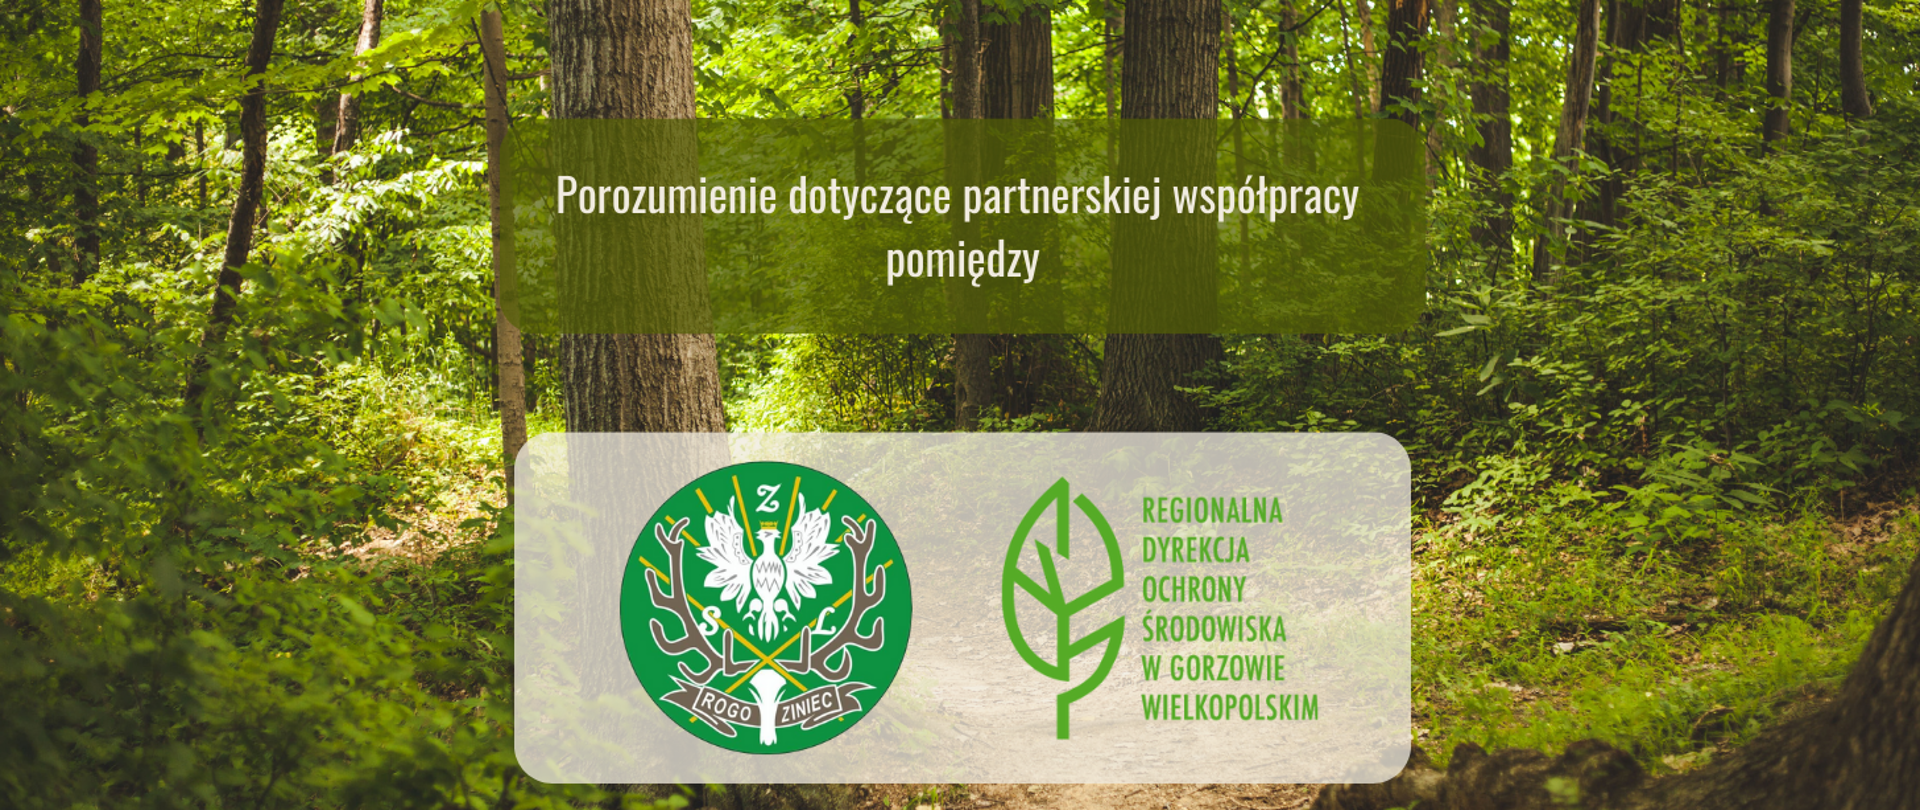 Logotypy Regionalnej Dyrekcji Ochrony Środowiska w Gorzowie Wielkopolskim (zielony liść) i Technikum Leśnego w Rogozińcu. Powyżej napis: Porozumienie dotyczące partnerskiej współpracy
pomiędzy. W tle las.